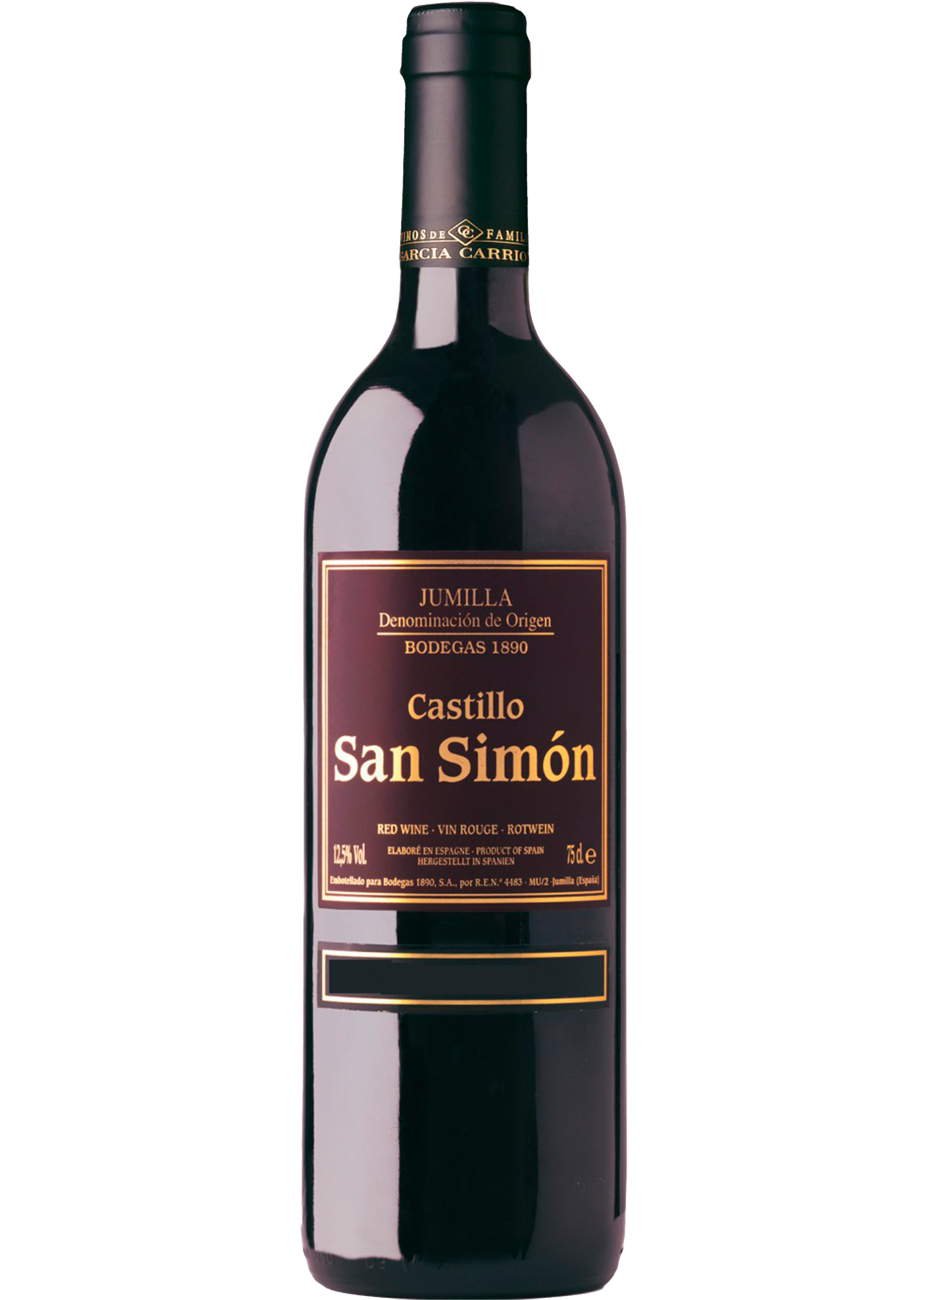 Вино Garcia Carrion. Испанское вино Кастильо. J Garcia Carrion вино. Кастильо Сан Симон. Купить вино castillo